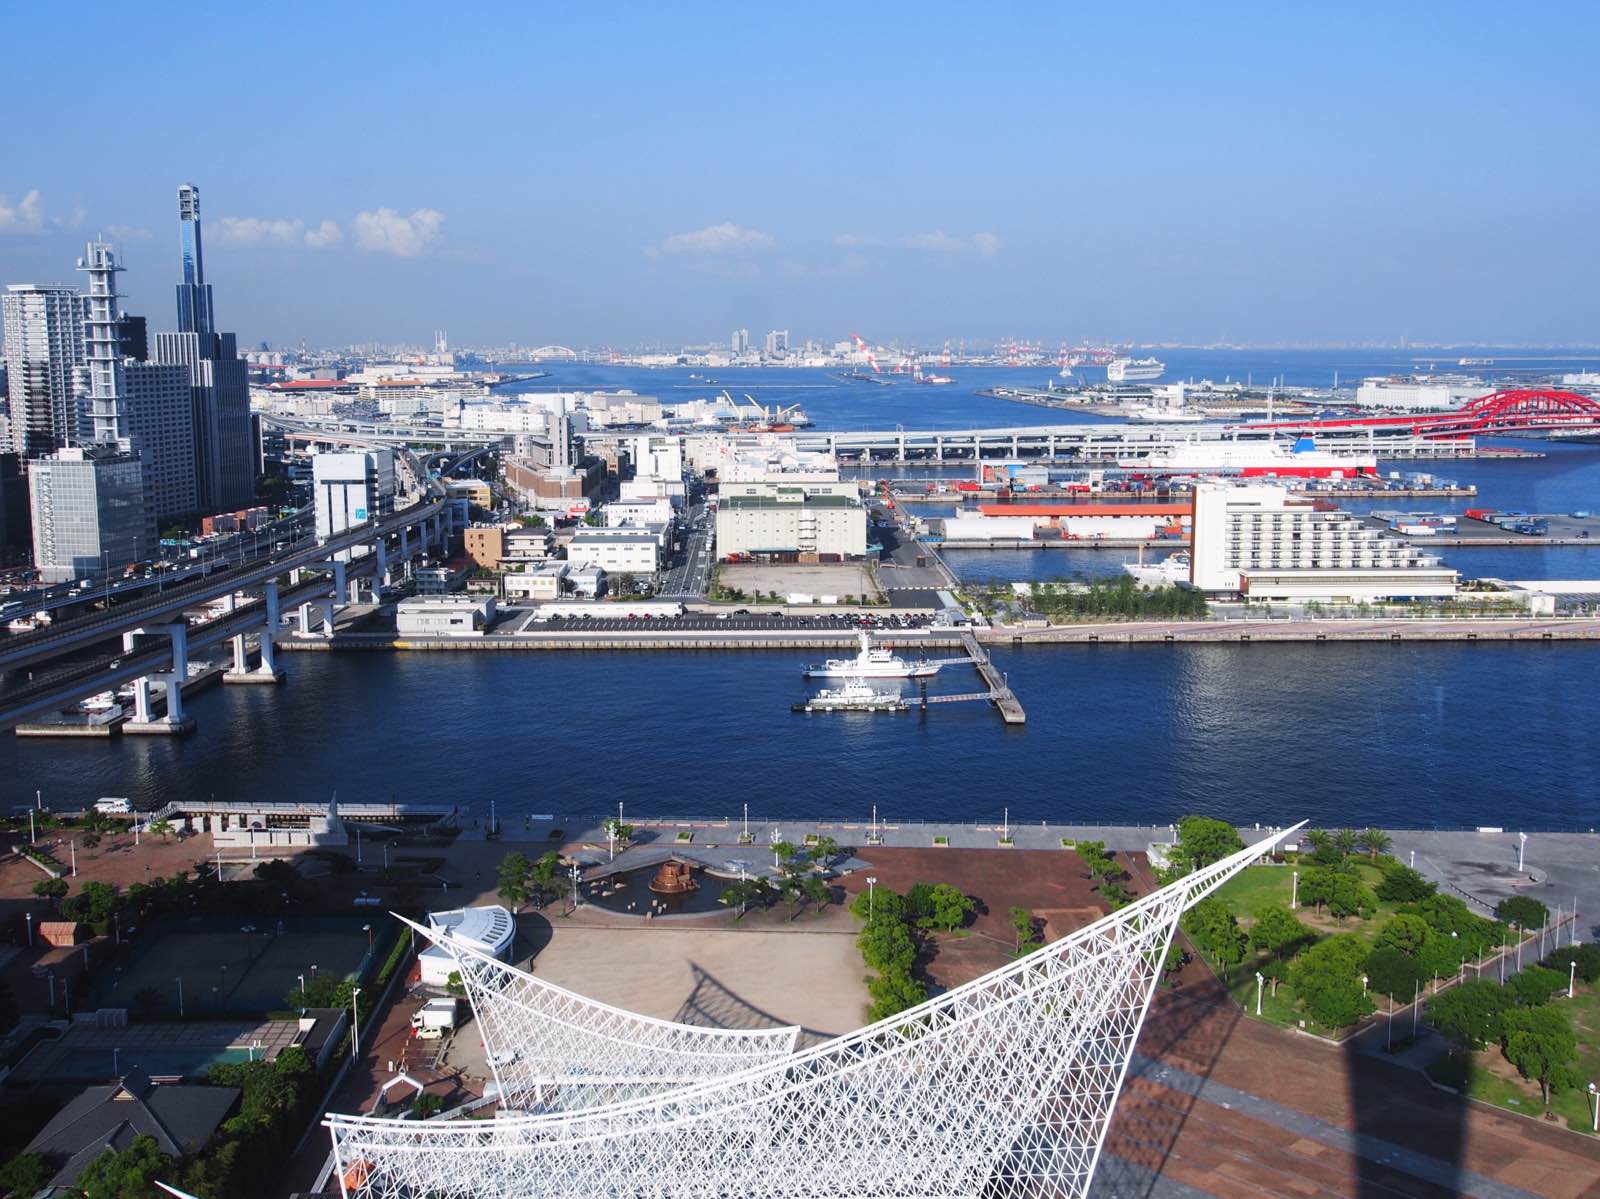 天气晴好，海景无敌。神户塔可以观景，看看这片海域，船舶和拥挤的城市。在